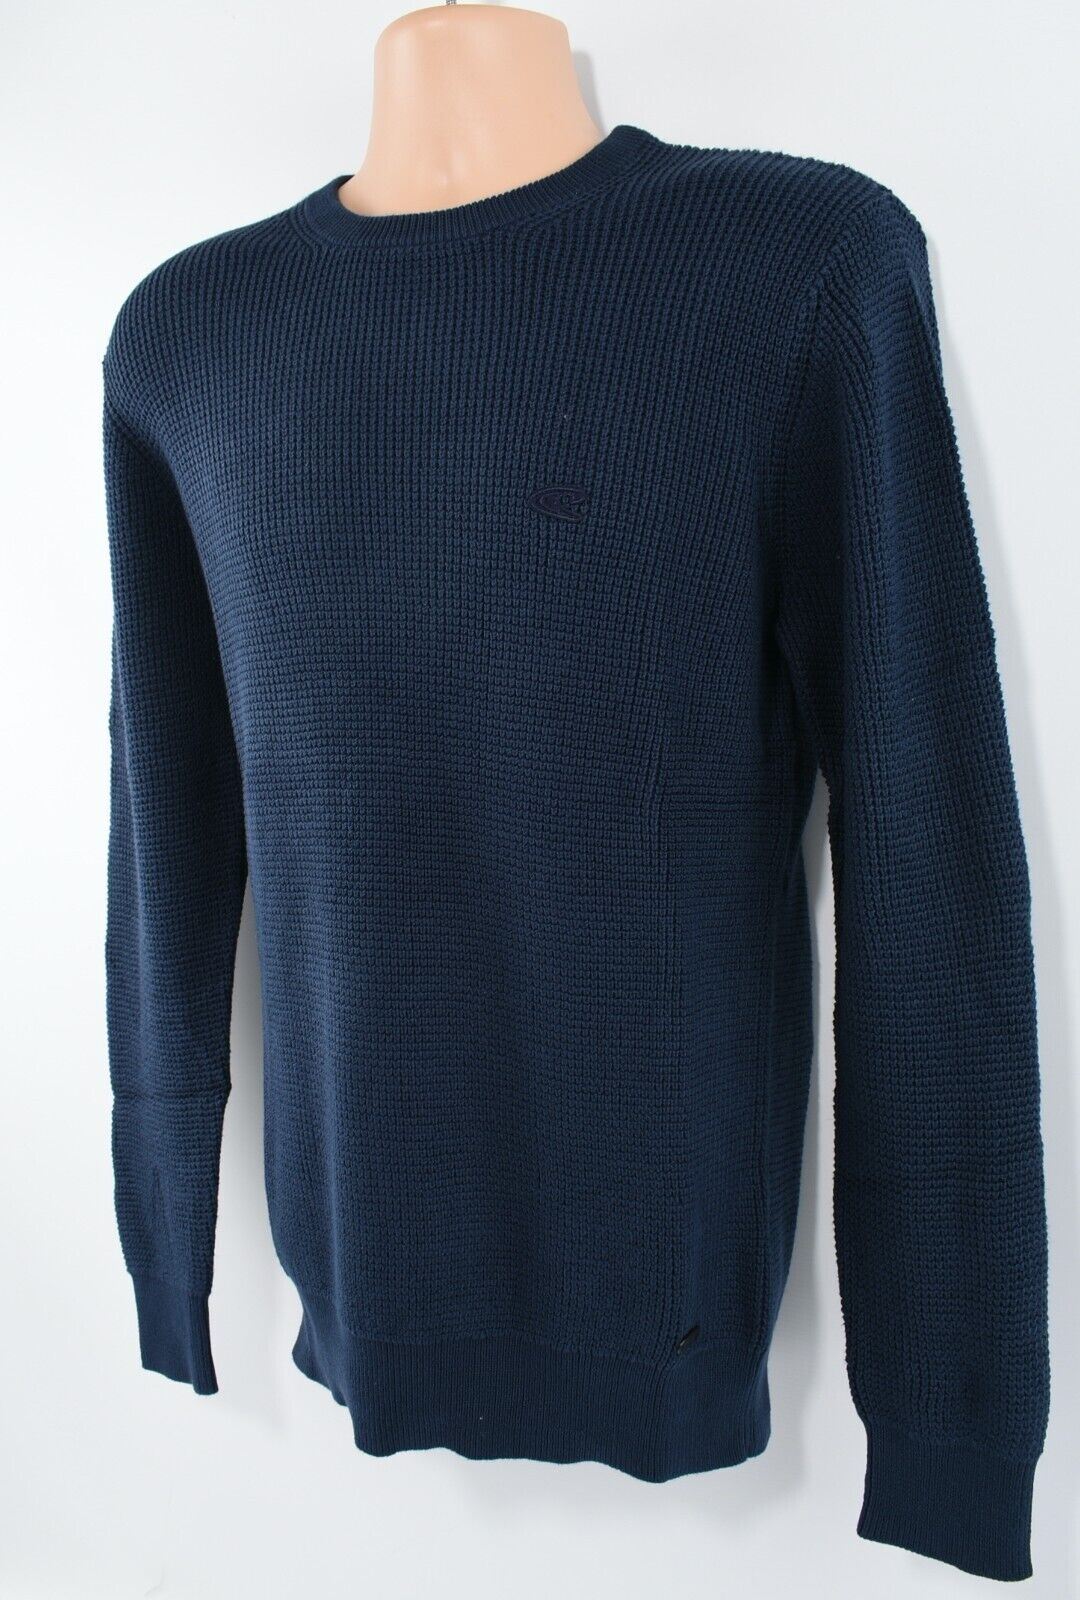 O'NEILL Men's TUCK Pullover Jumper, 100% Cotton Knit, Ink Blue, size MEDIUM